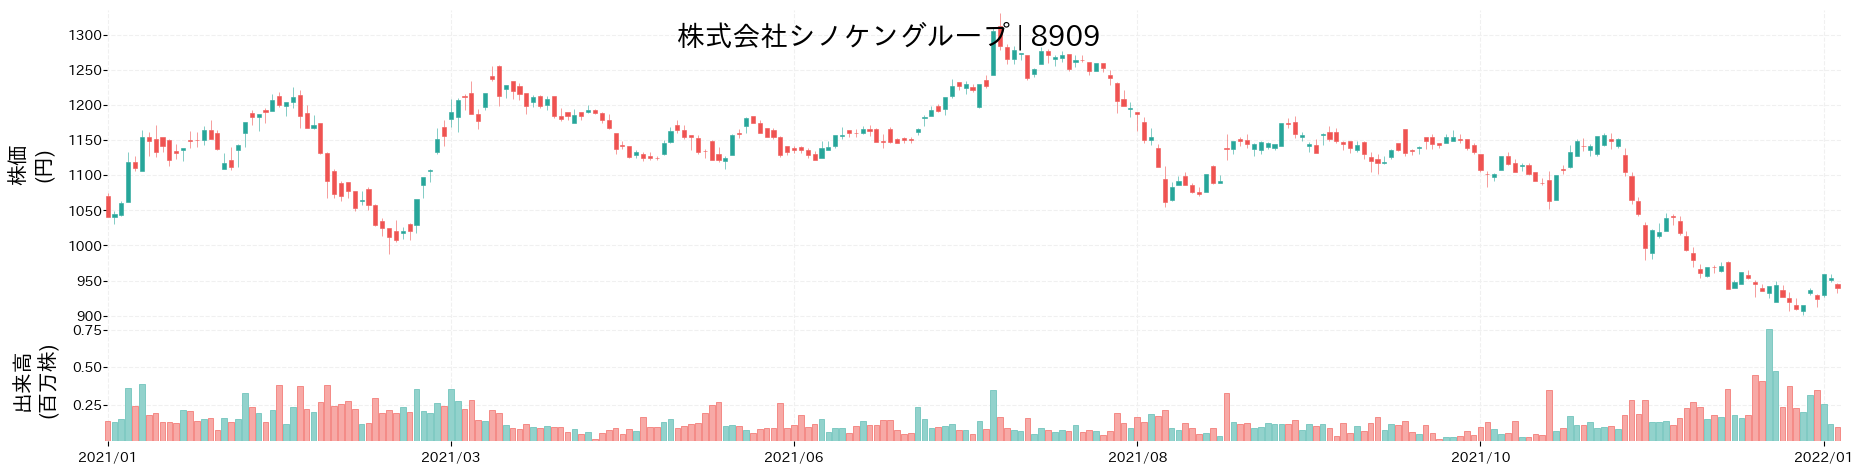 シノケングループの株価推移(2021)